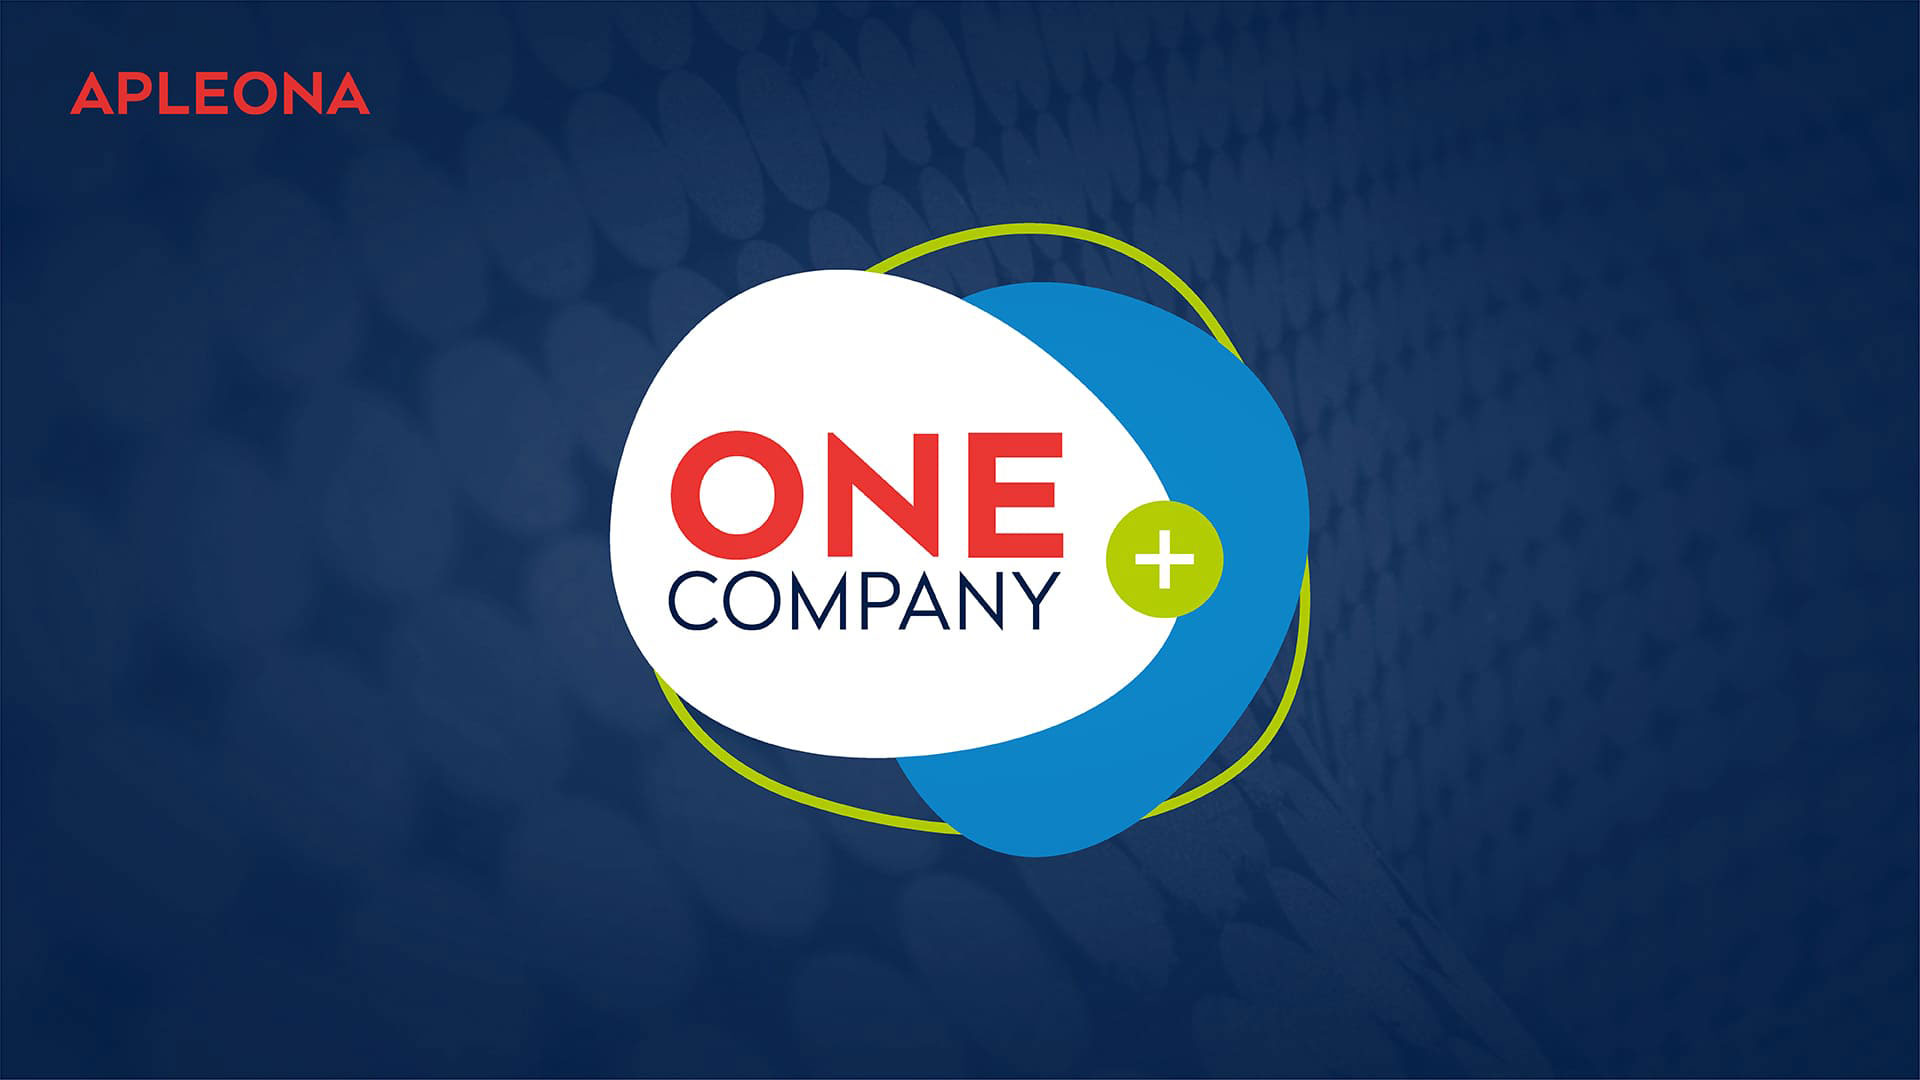 One Company. Completato l’iter di fusione di Apleona Group e Gegenbauer